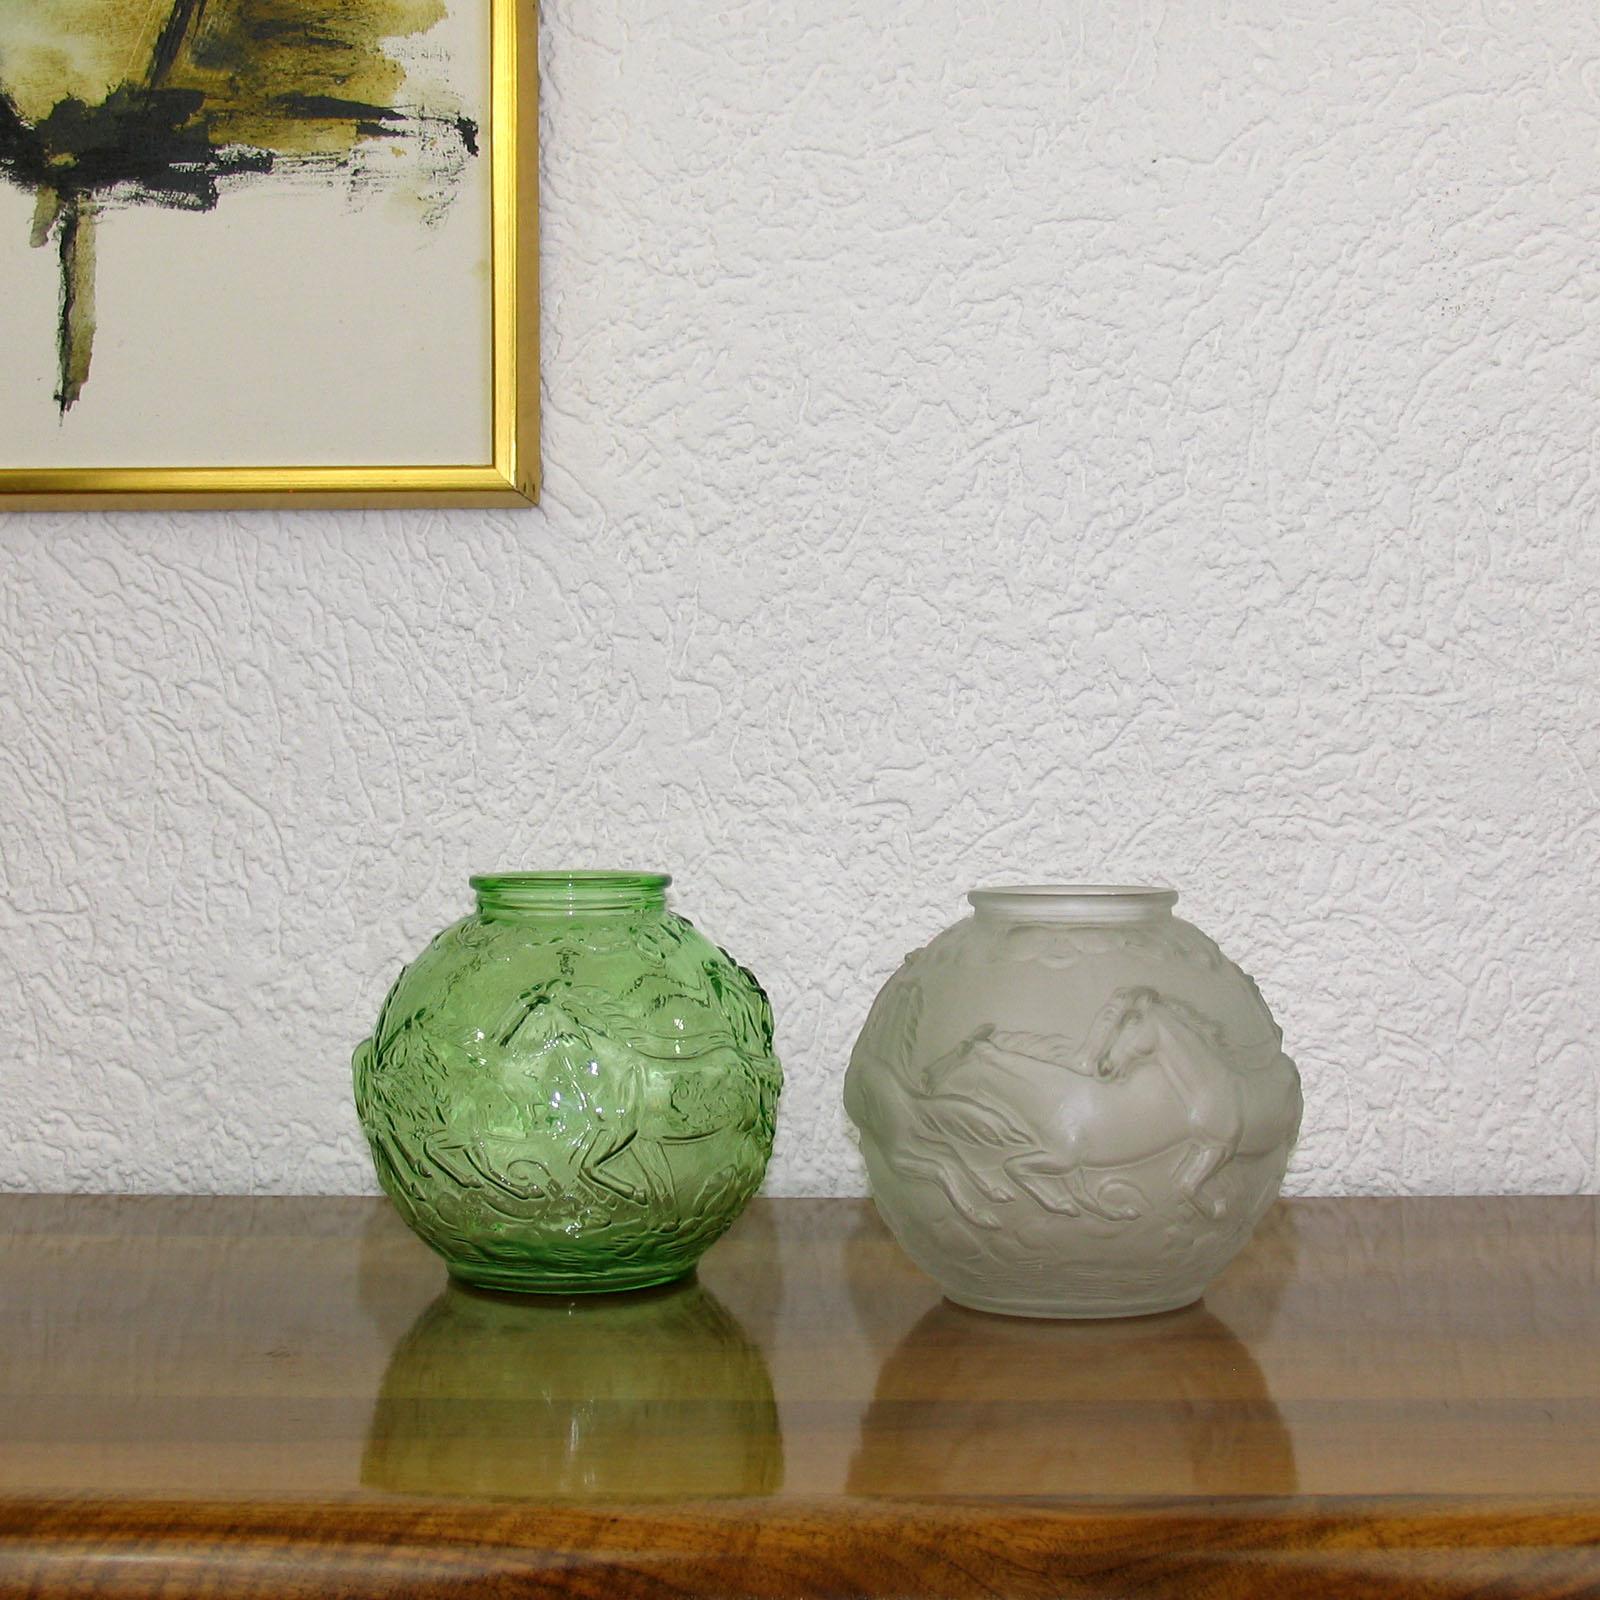 Grüne Pressglasvase im Art déco-Stil, in der Form geblasen, mit galoppierenden Pferden, entworfen von Karel Zentner um 1930.
Es wurde in der Tschechoslowakei in den 1920er-1930er Jahren hergestellt. Das Modell wurde als Vase Nr. 1917 im